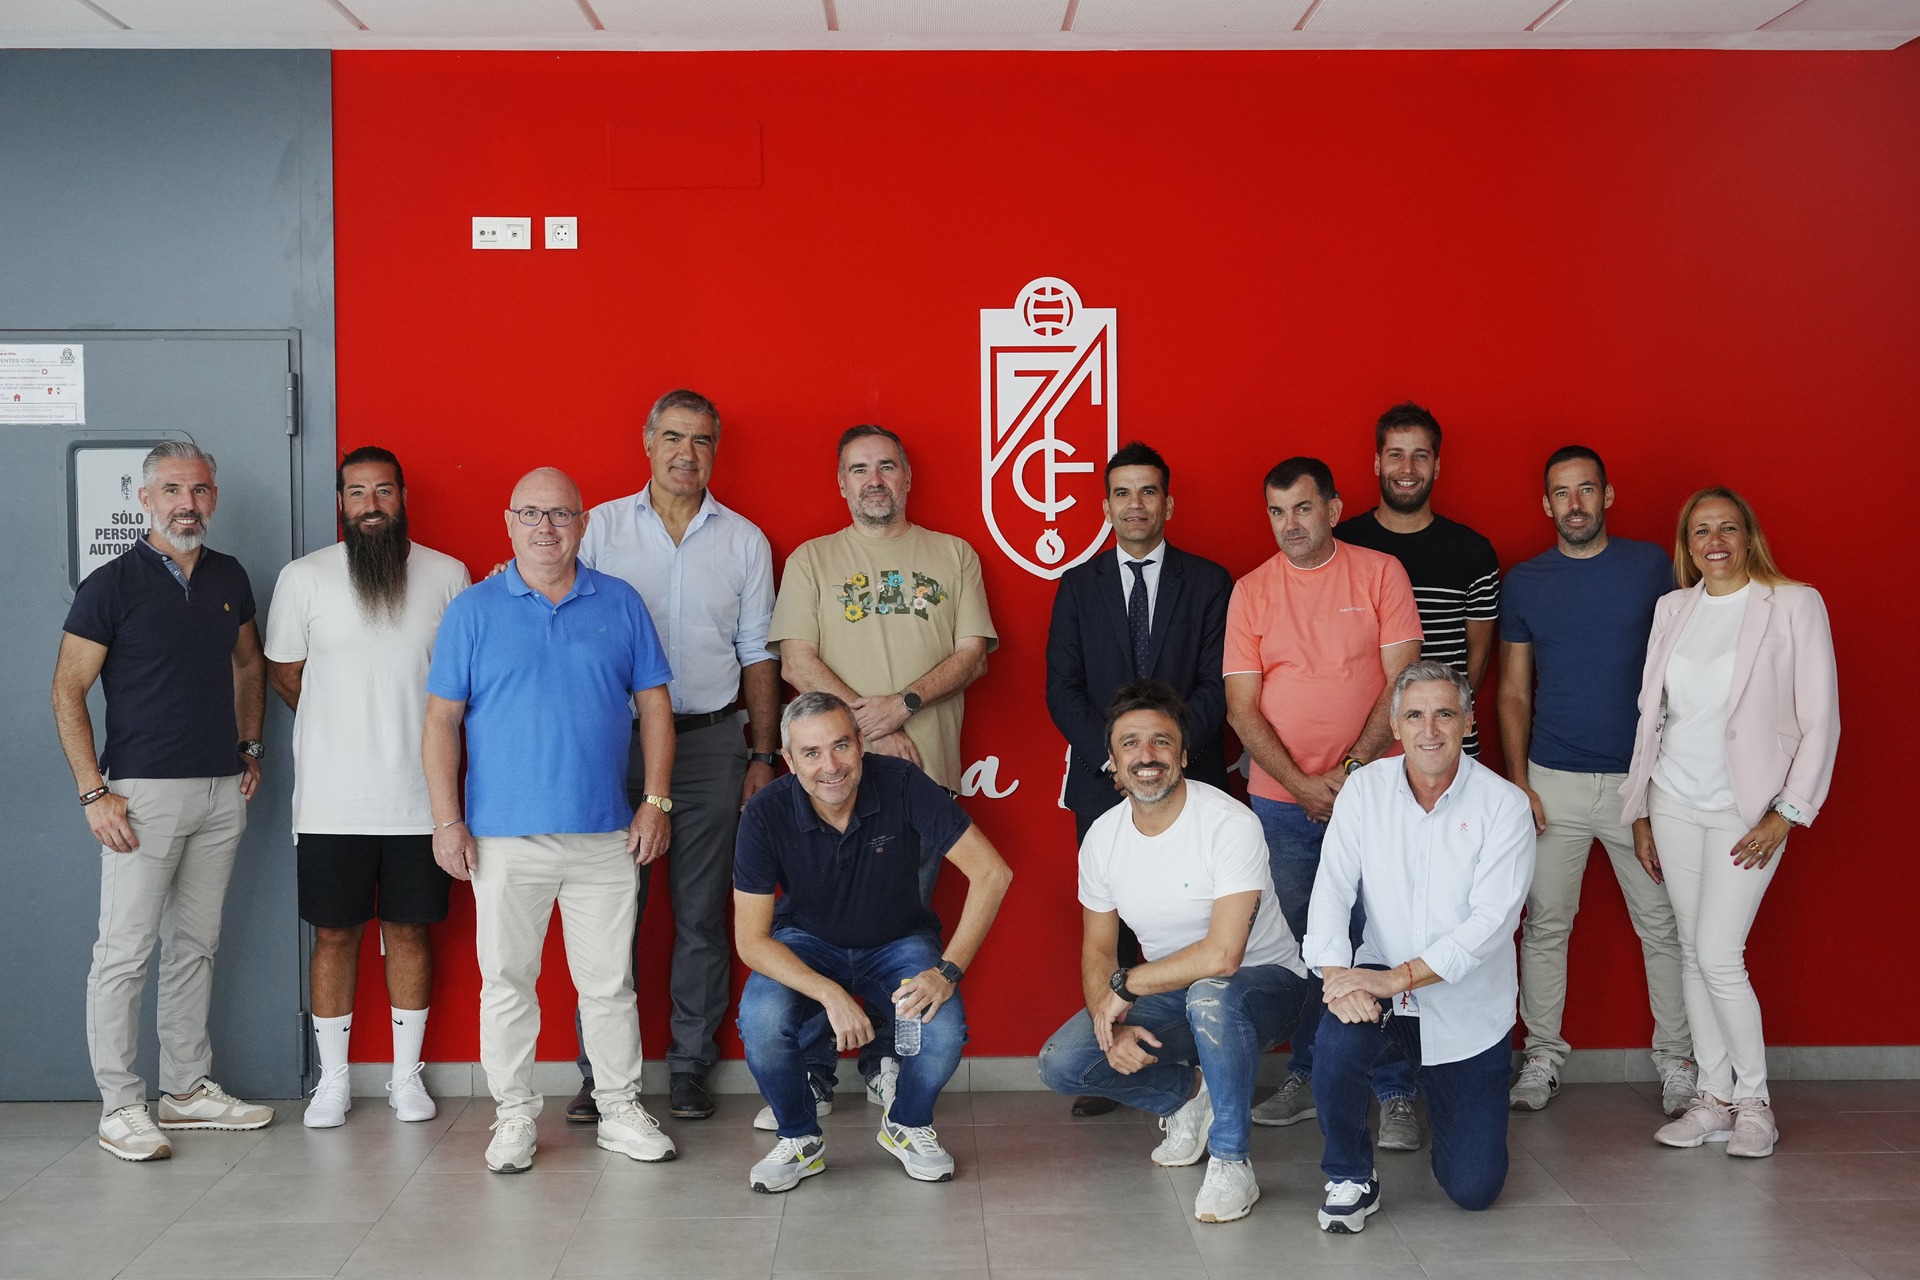 Representantes de otros clubes de LaLiga se interesan por el programa FIFA y la ampliación de la Ciudad Deportiva